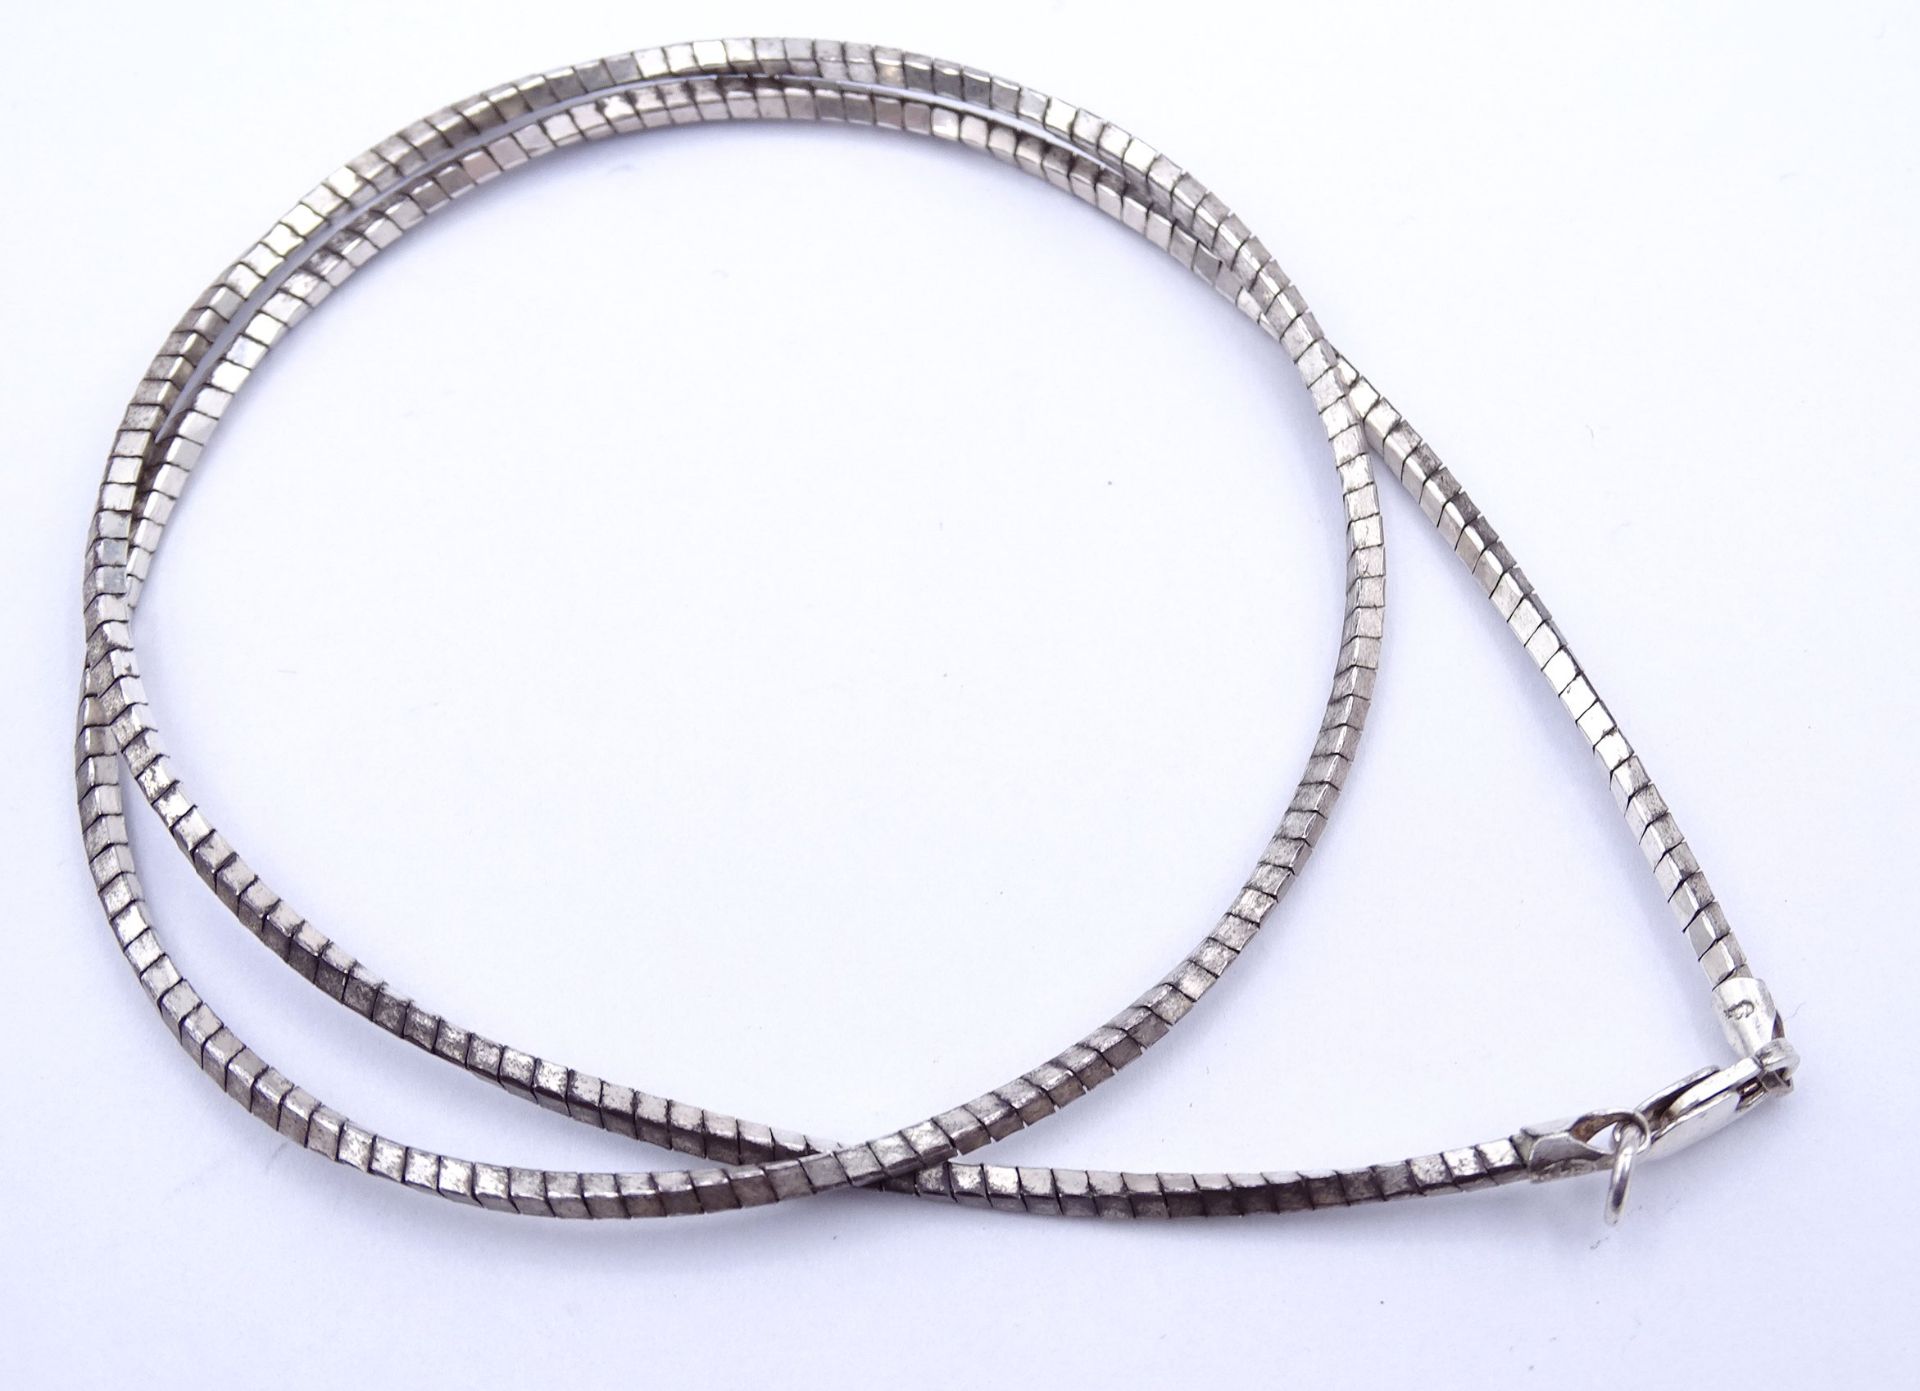 Drei Silberketten 0.925 , L. 43, 50 und 45cm, zus. 25,9g. - Image 2 of 4